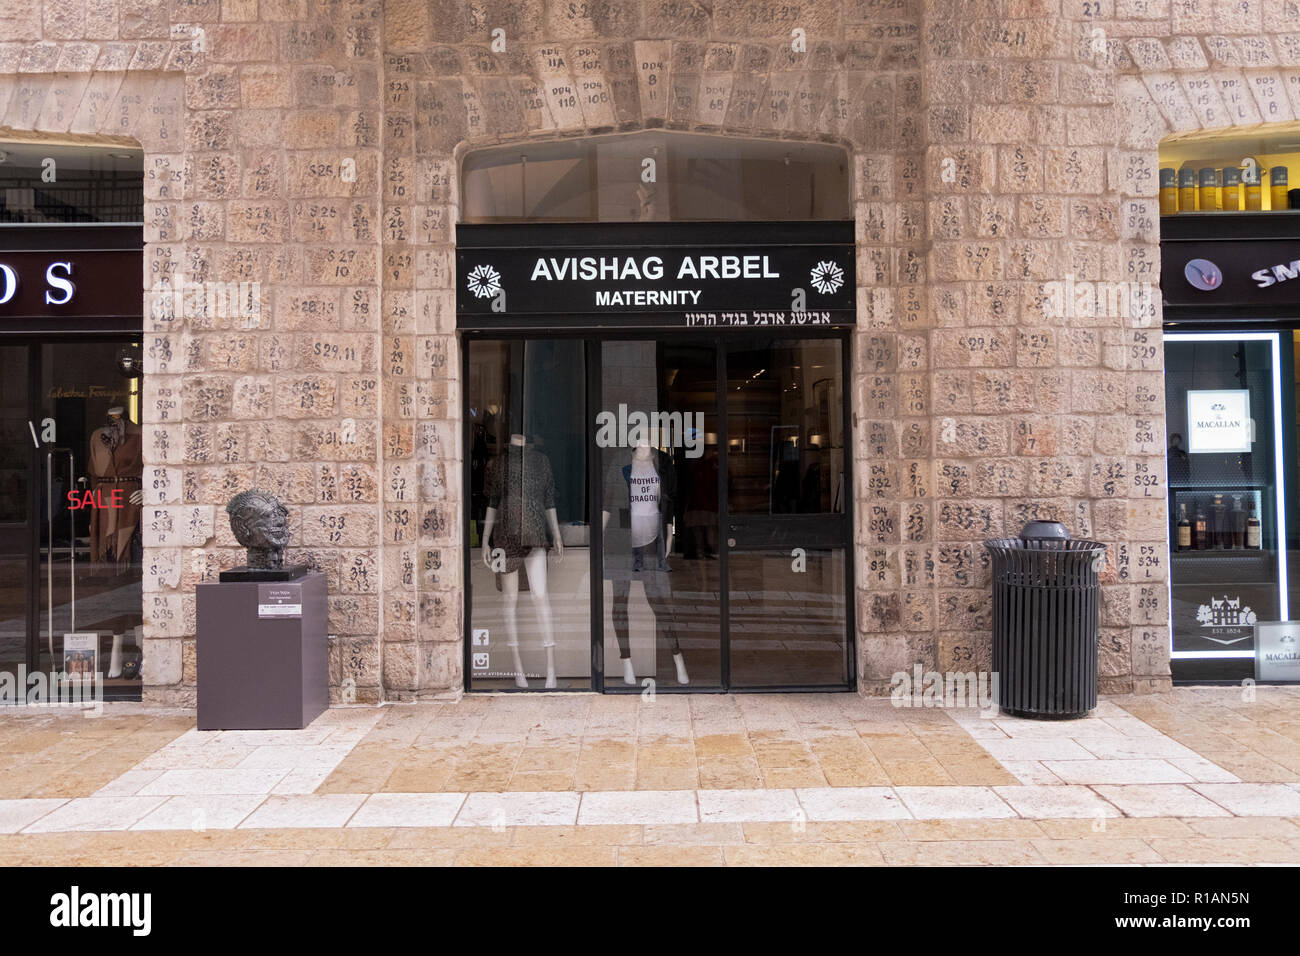 Eine Mutterschaft Shop im Mamilla Mall in Jerusalem, Israel. Original steine waren nummeriert, restauriert und in der ursprünglichen Position platziert. Stockfoto